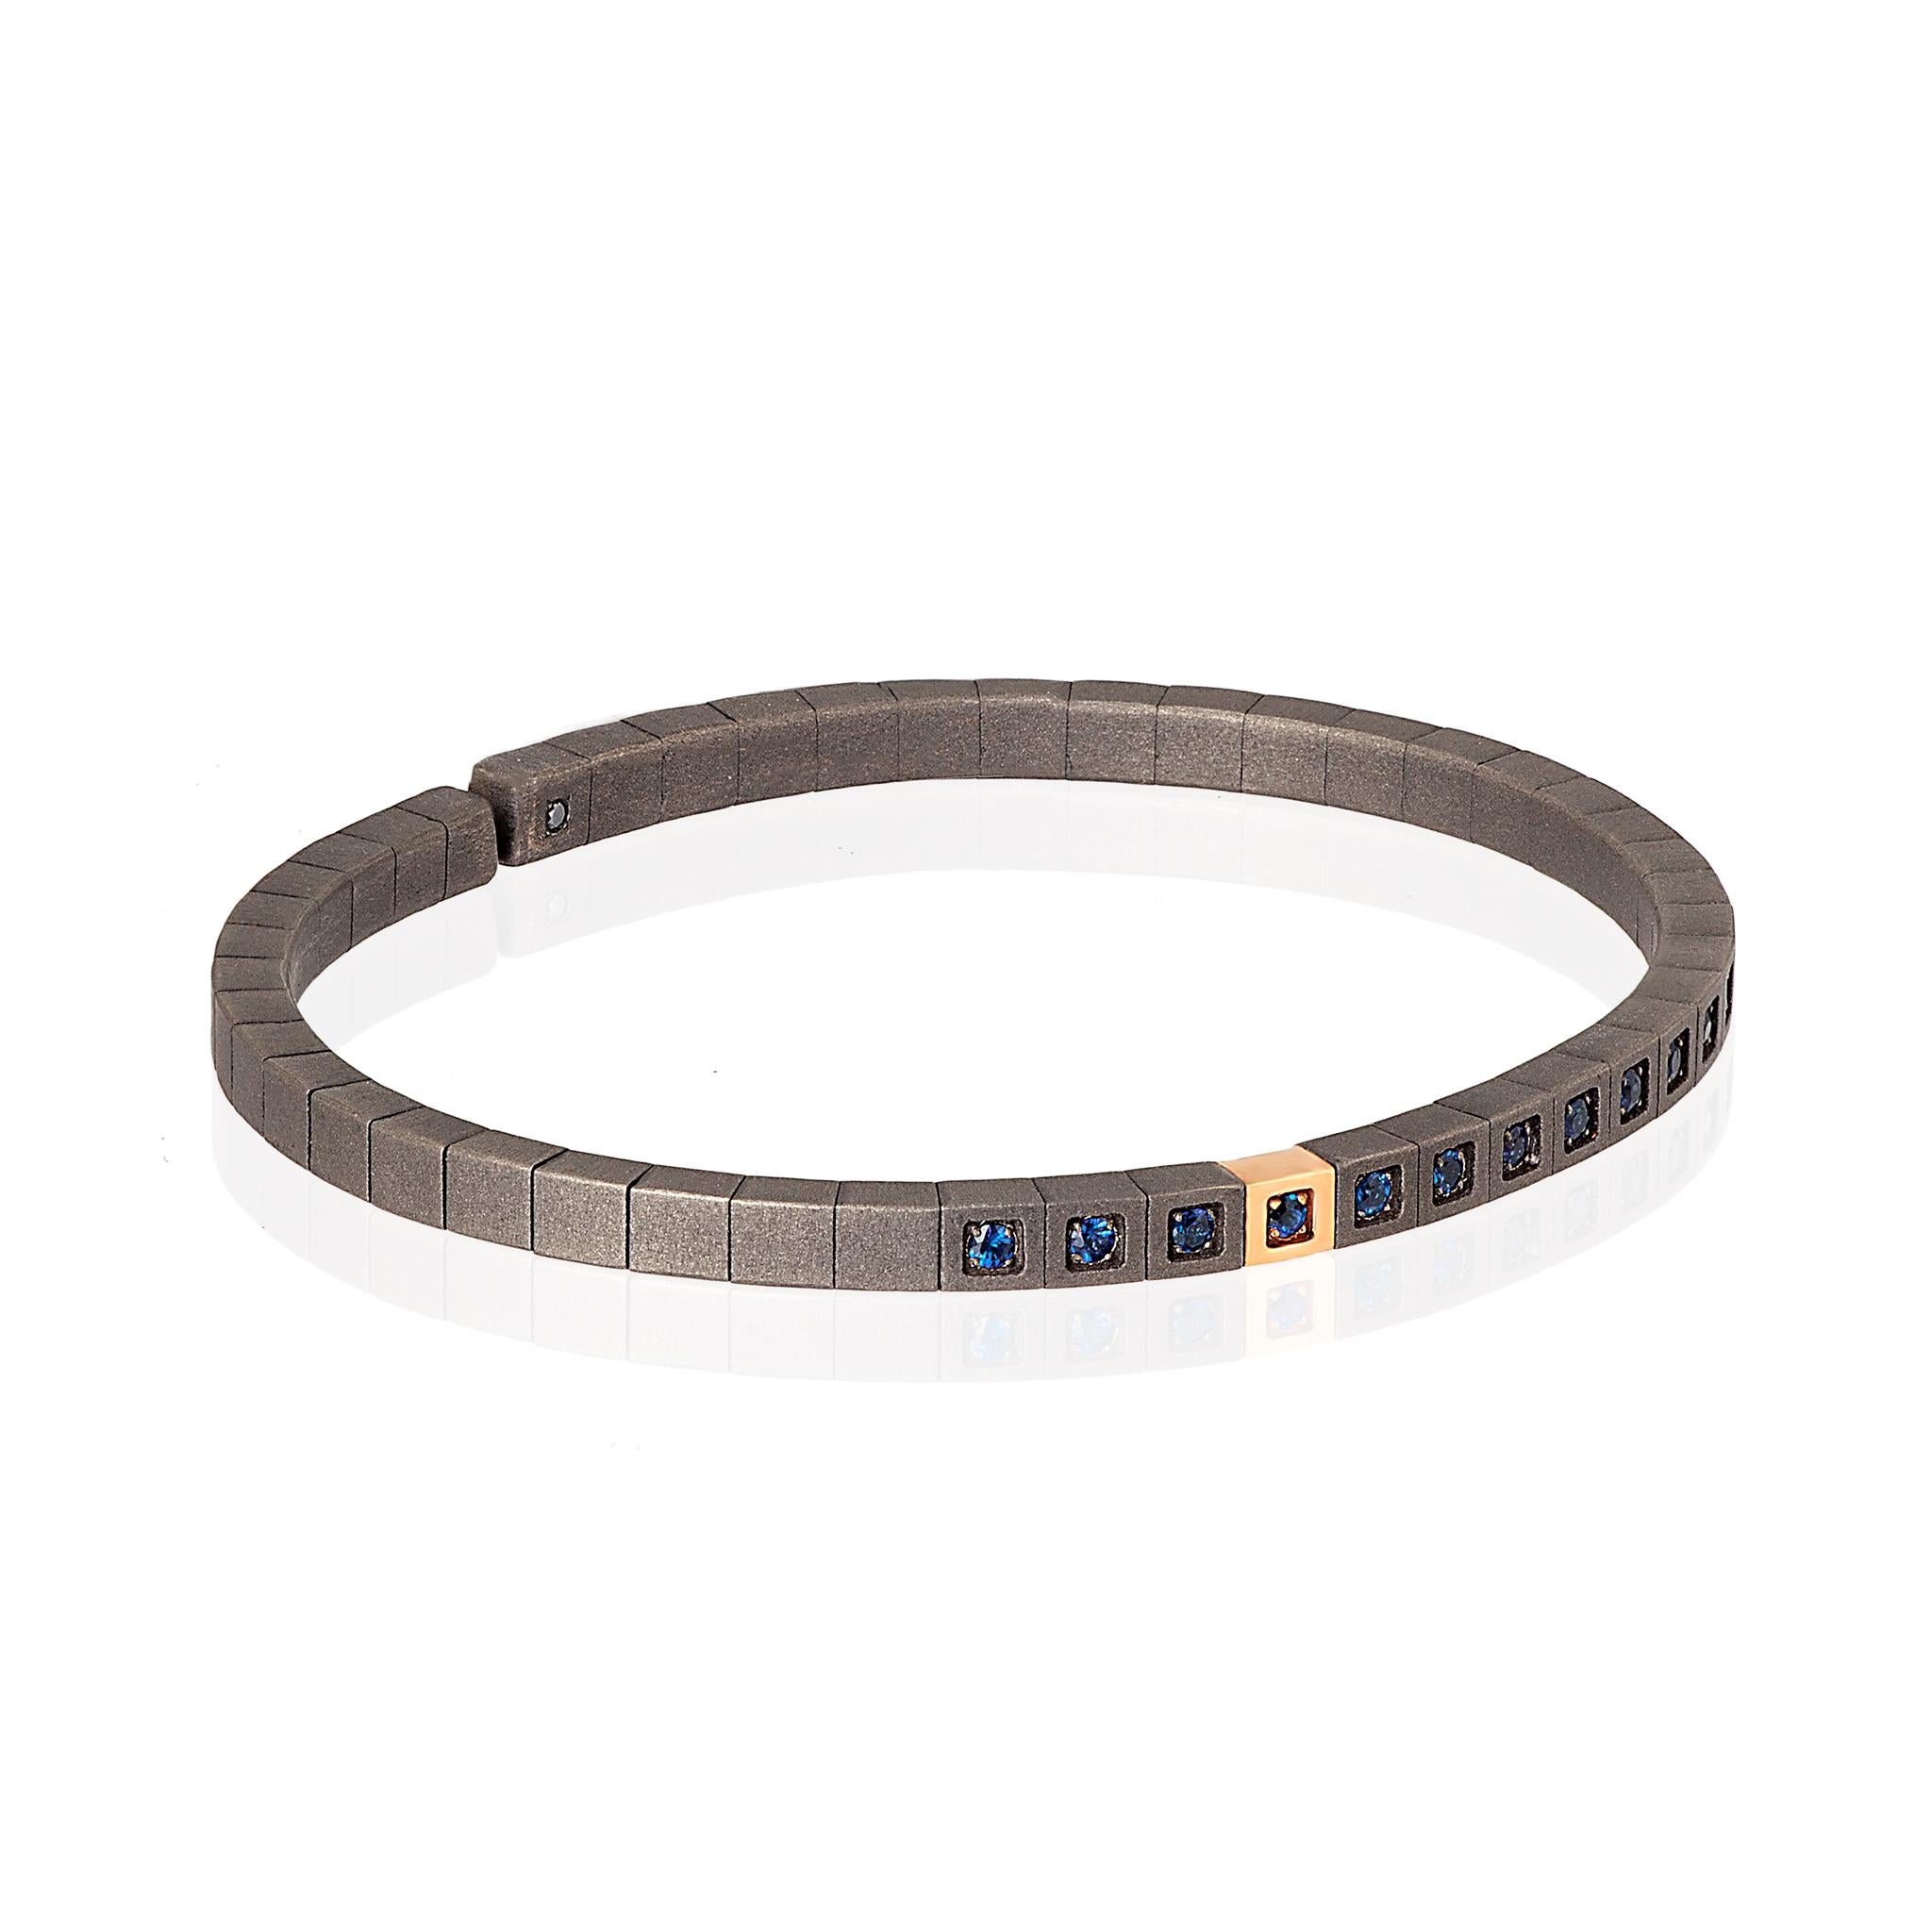 Bracelet Looping pour homme en titane, or rouge 9 kt et saphirs bleus. Un bracelet précieux au design innovant dans lequel une longue série de cubes en titane sont reliés entre eux par un ressort interne, ce qui donne de la souplesse à l'ensemble de